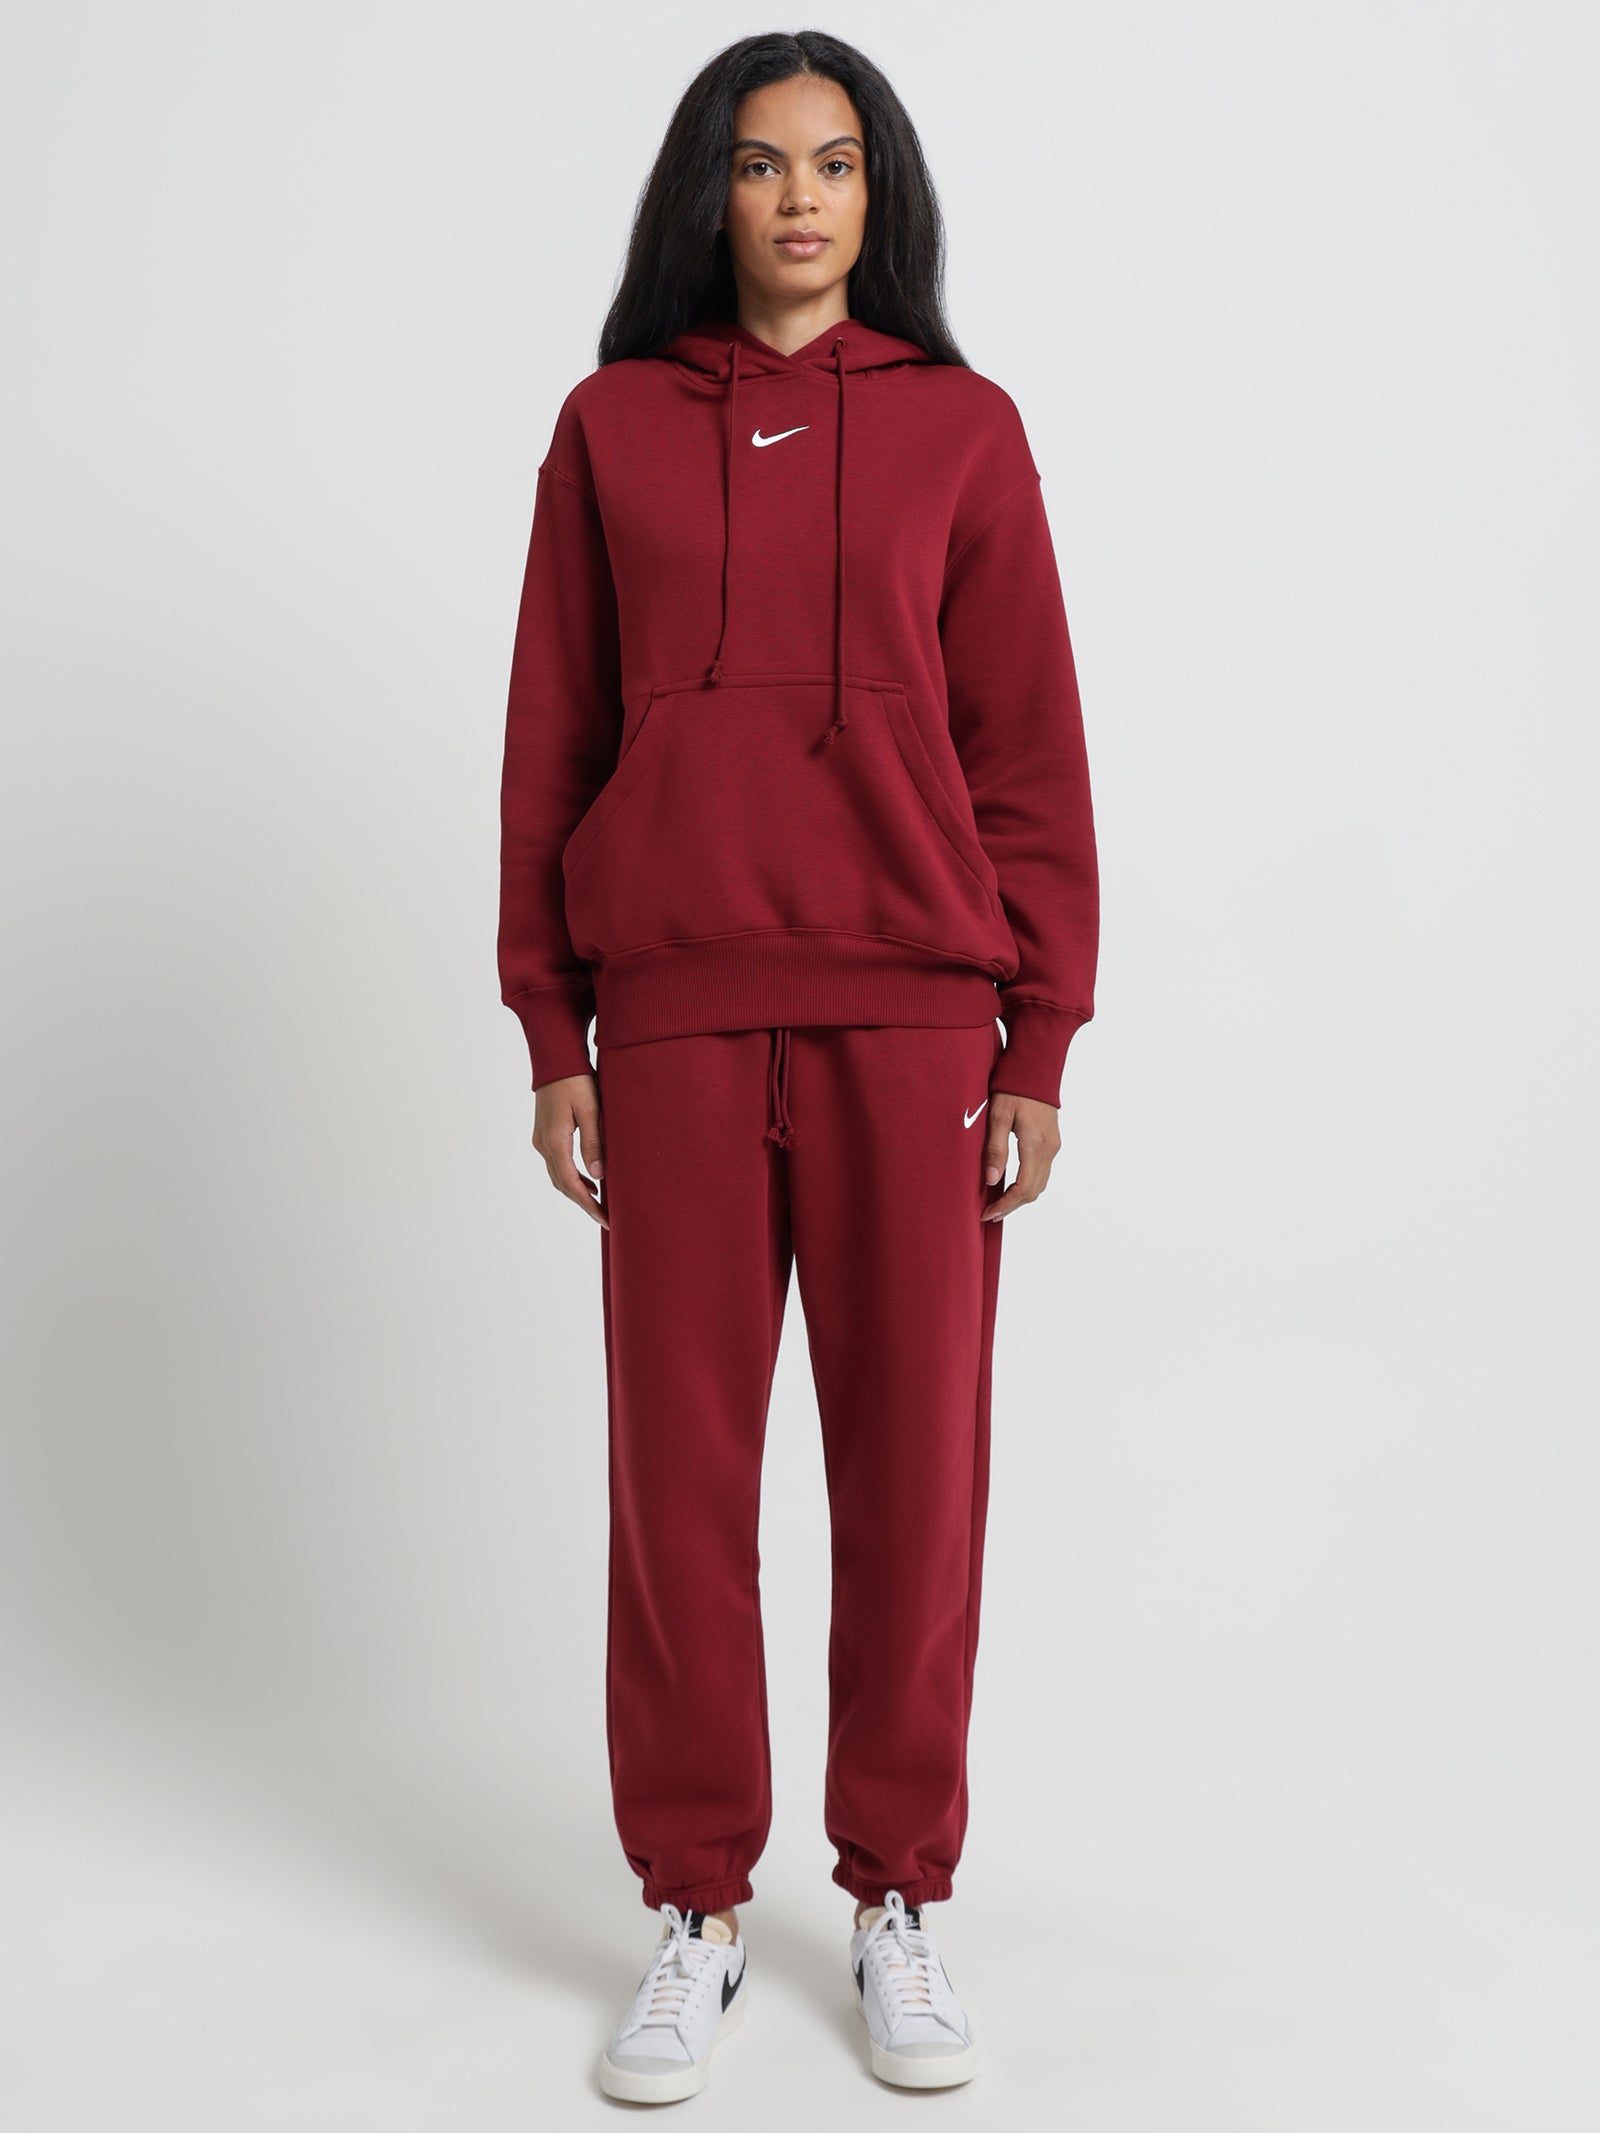 Sportswear Phoenix Fleece Oversized Pullover Hoodie in Team Red & Whit ...